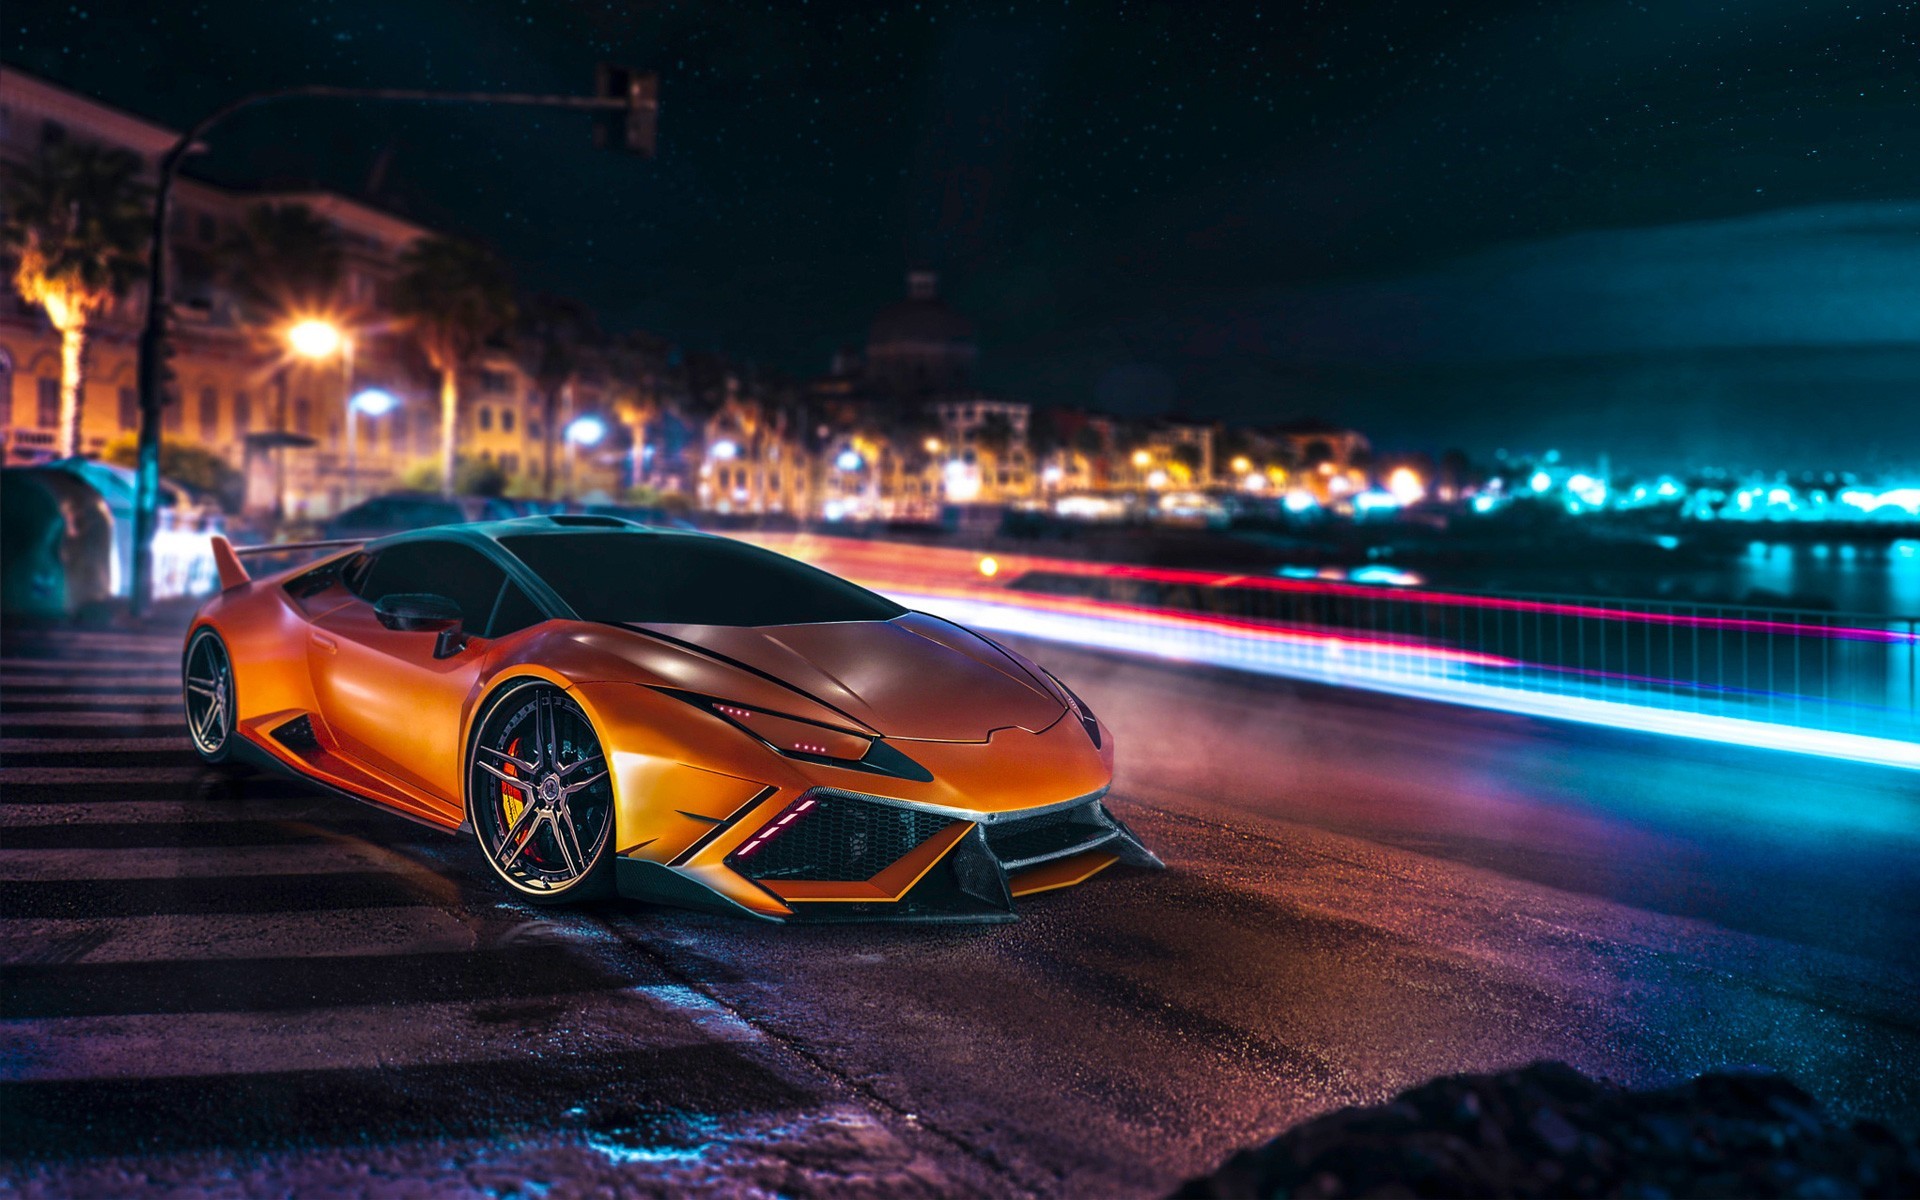 1920x1200 Lamborghini Huracan, Car, Lamborghini, Orange, Long Exposure, Night, Road,  City Wallpapers HD / Desktop and Mobile Backgrounds